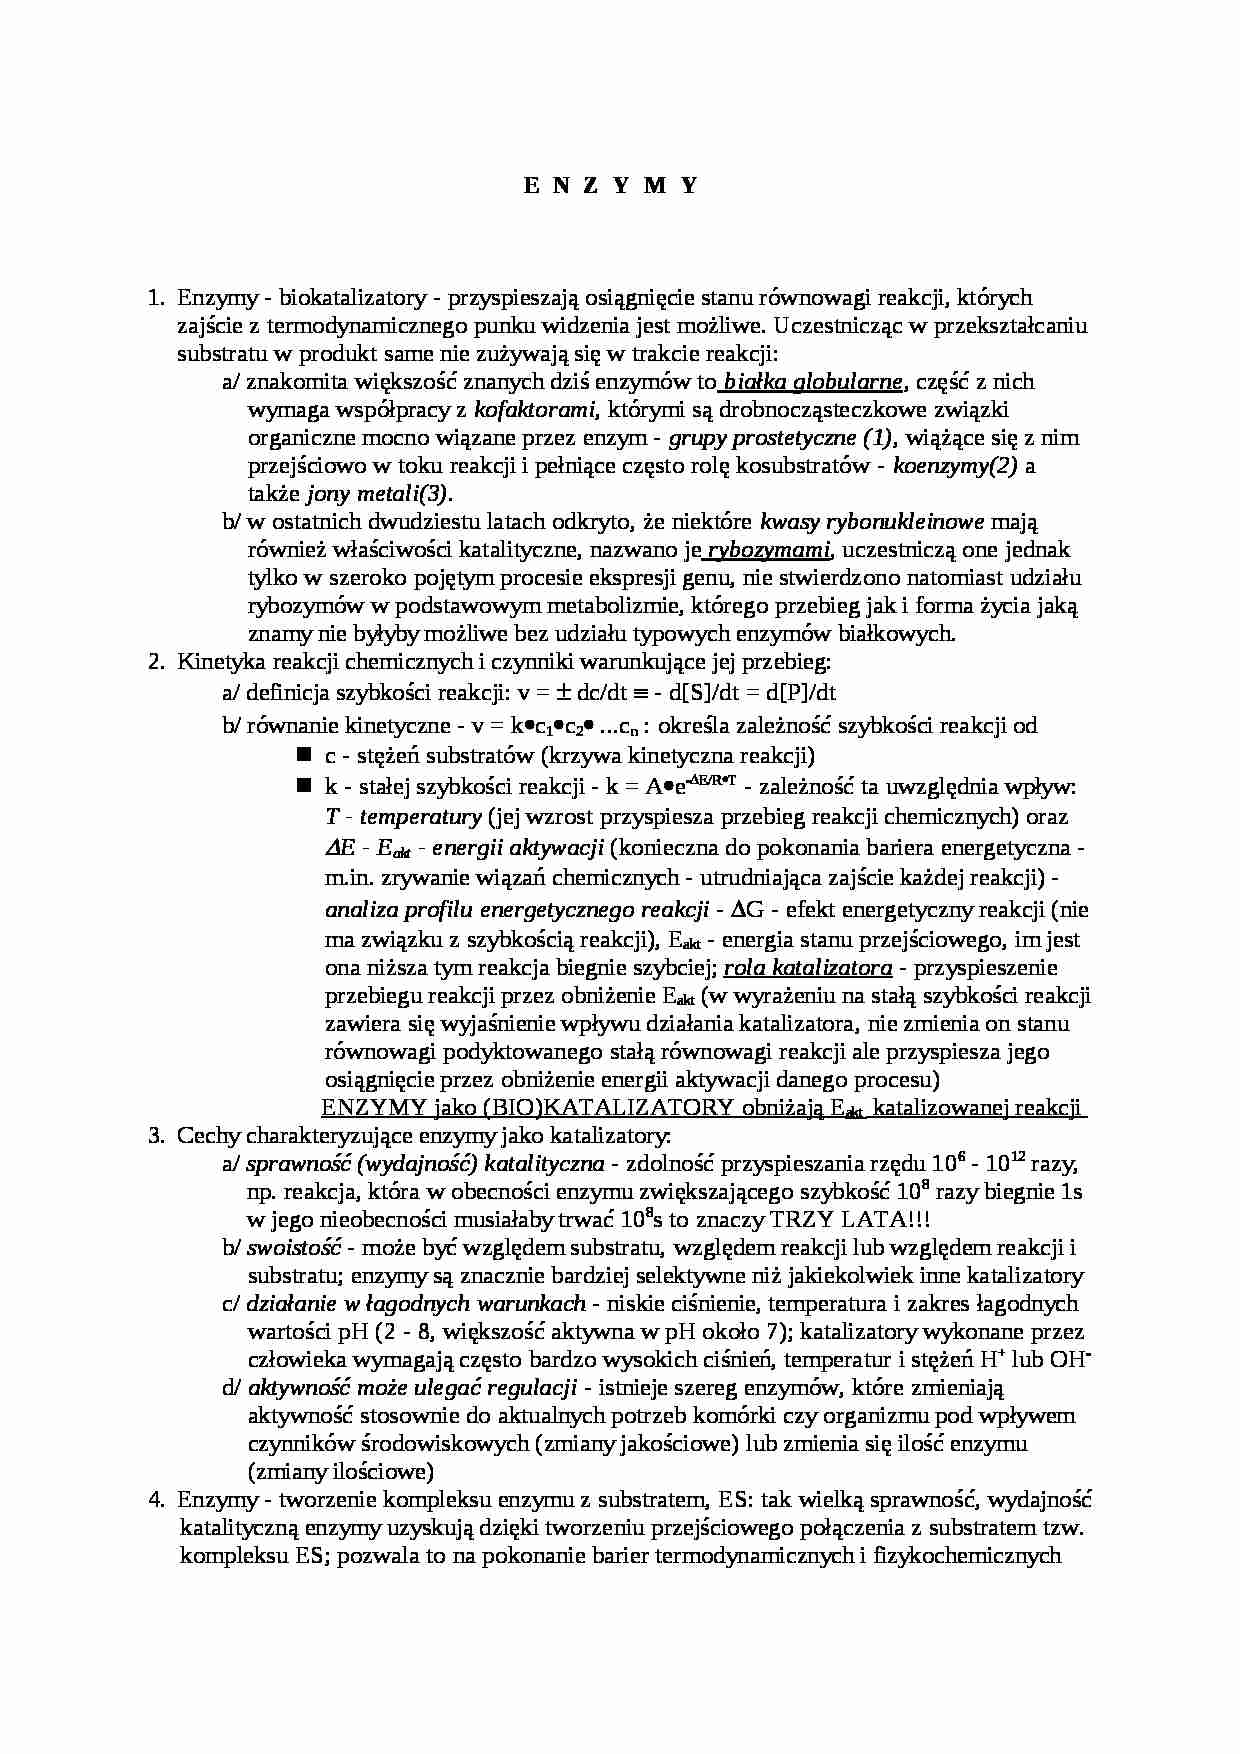 enzymologia - podstawowe zagadnienia - strona 1